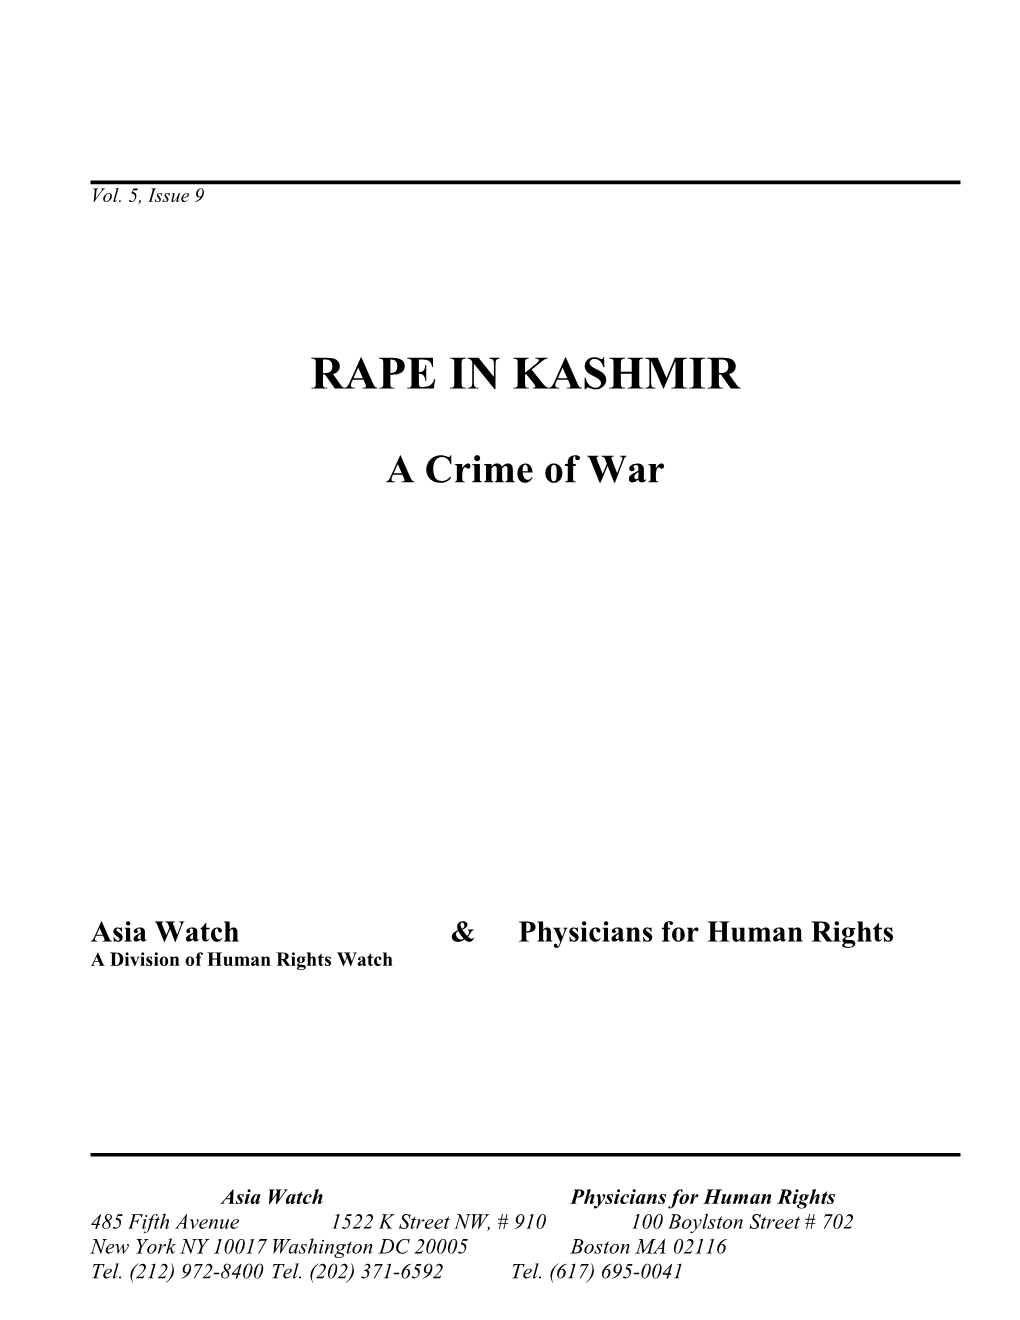 Rape in Kashmir